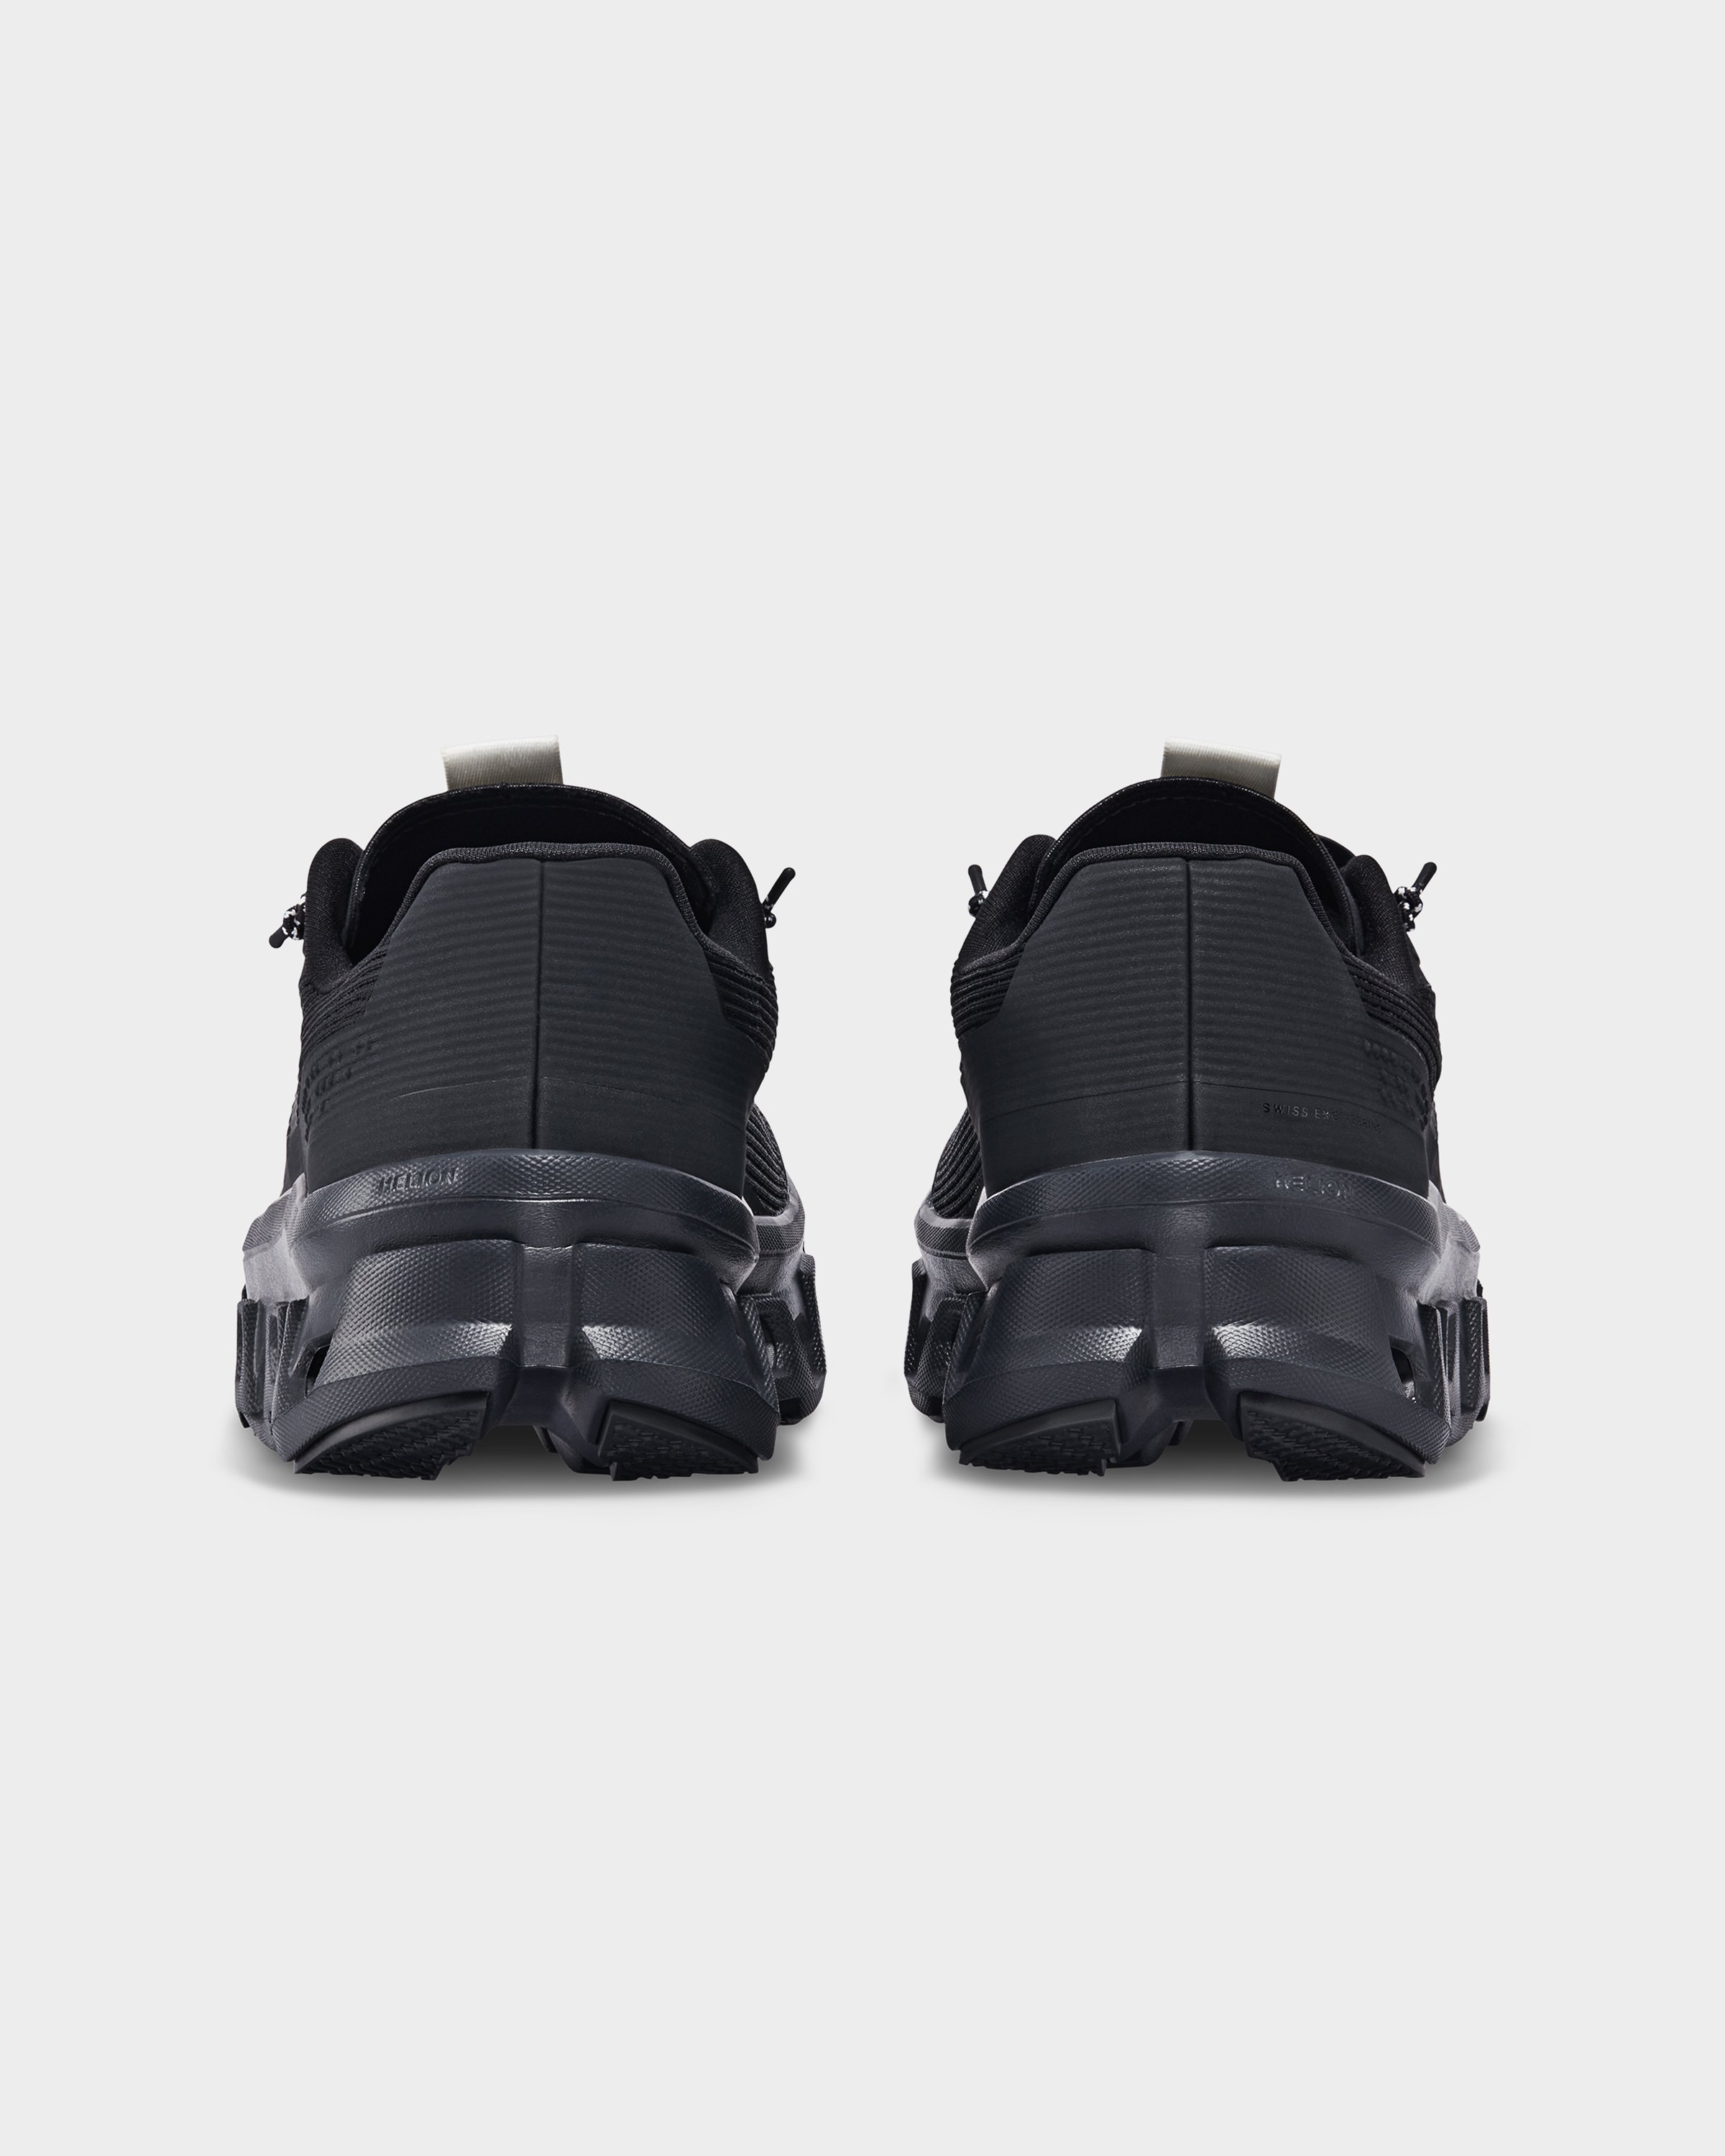 On - Cloudmonster Sensa Black - Footwear - Black - Image 4